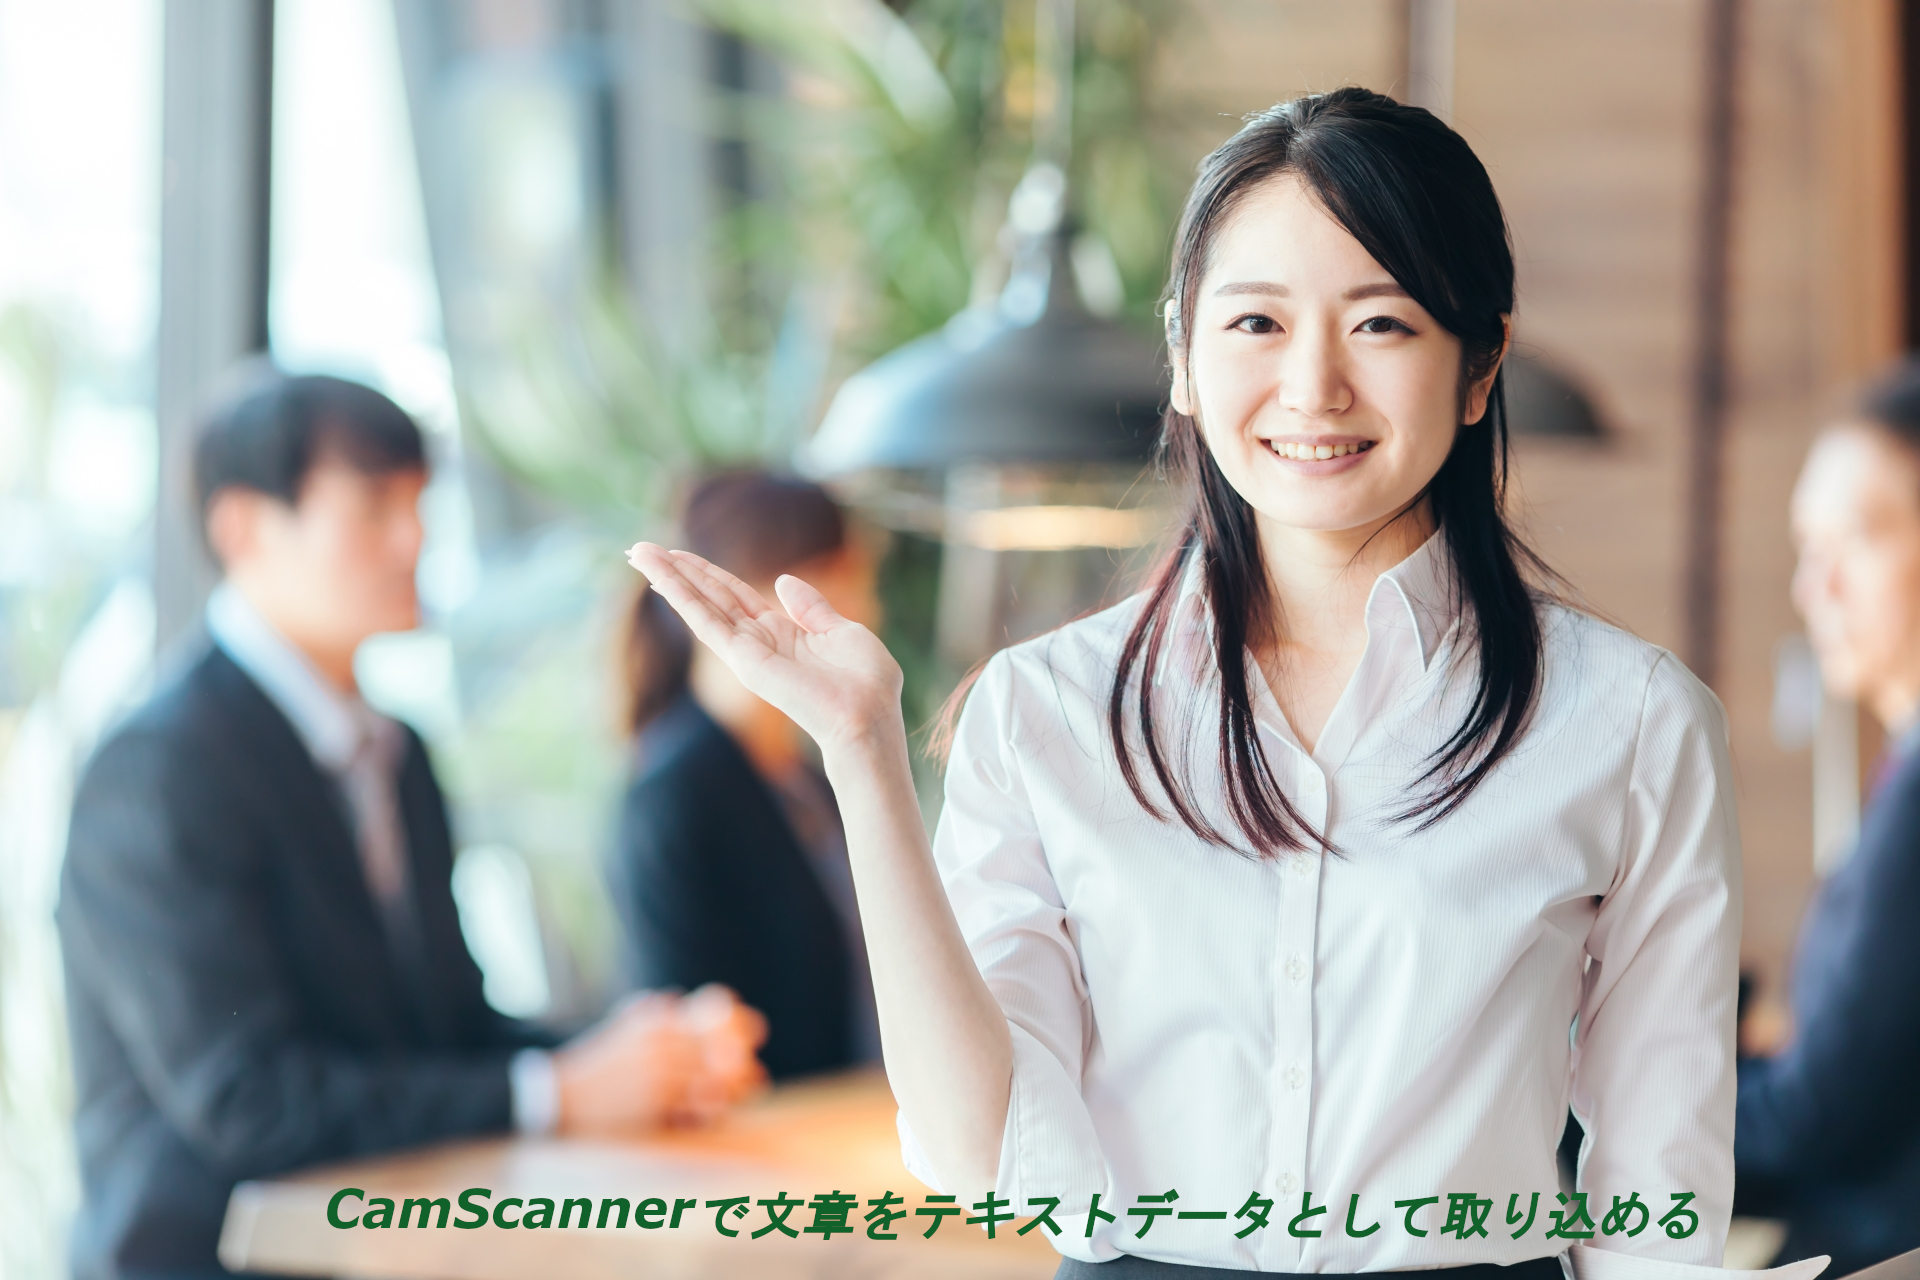 CamScannerで文章をテキストデータとして取り込める